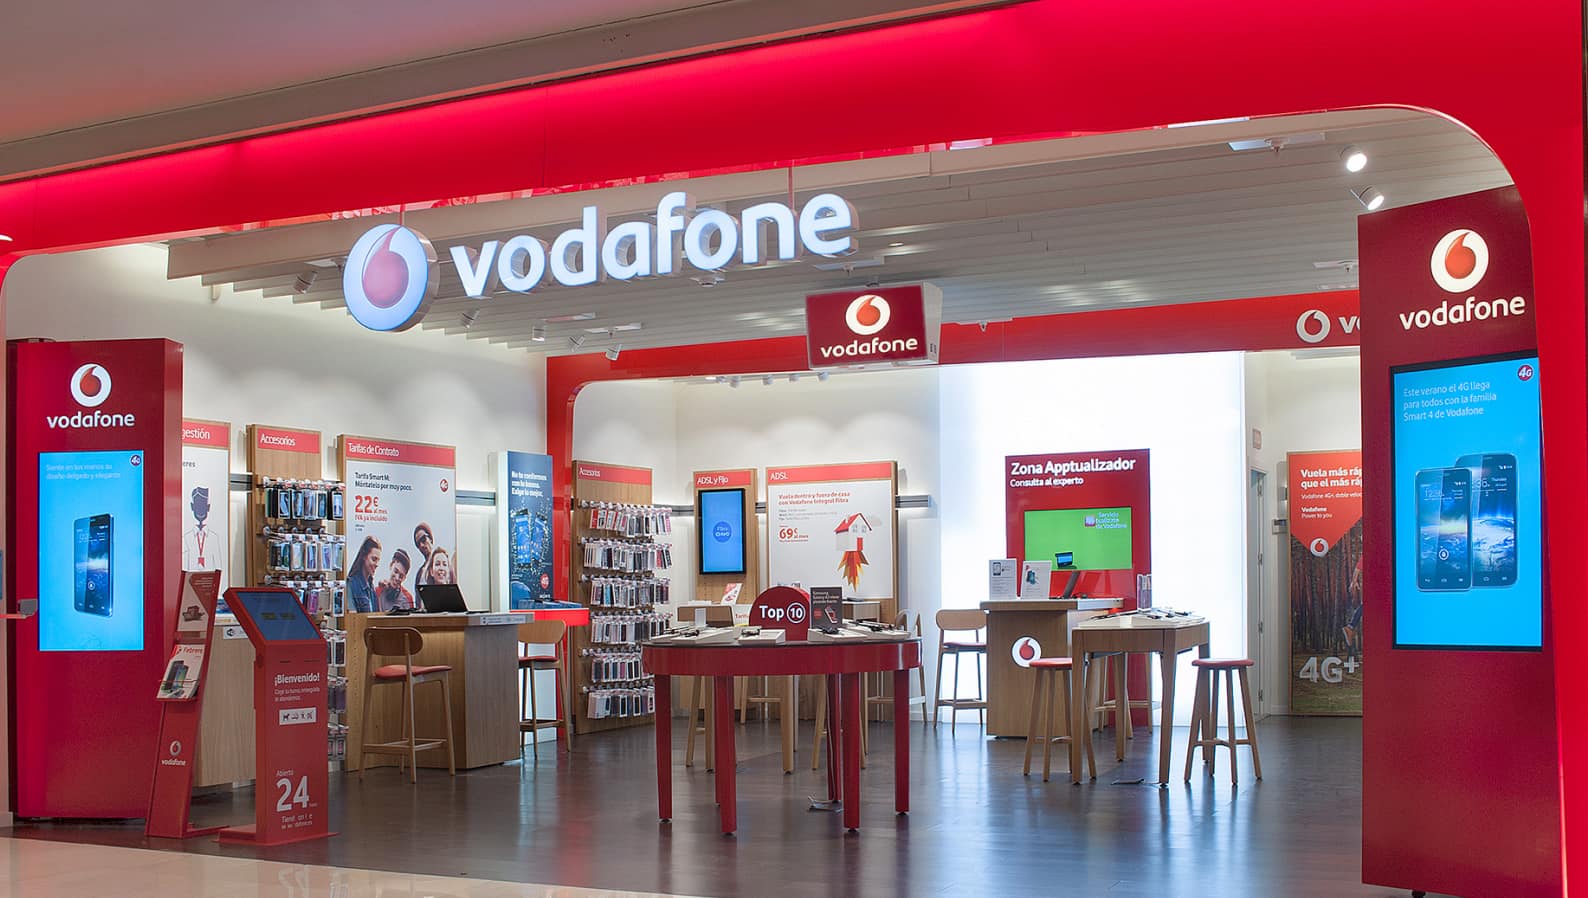 Instalación de rótulo y elementos gráficos en la tienda de Vodafone